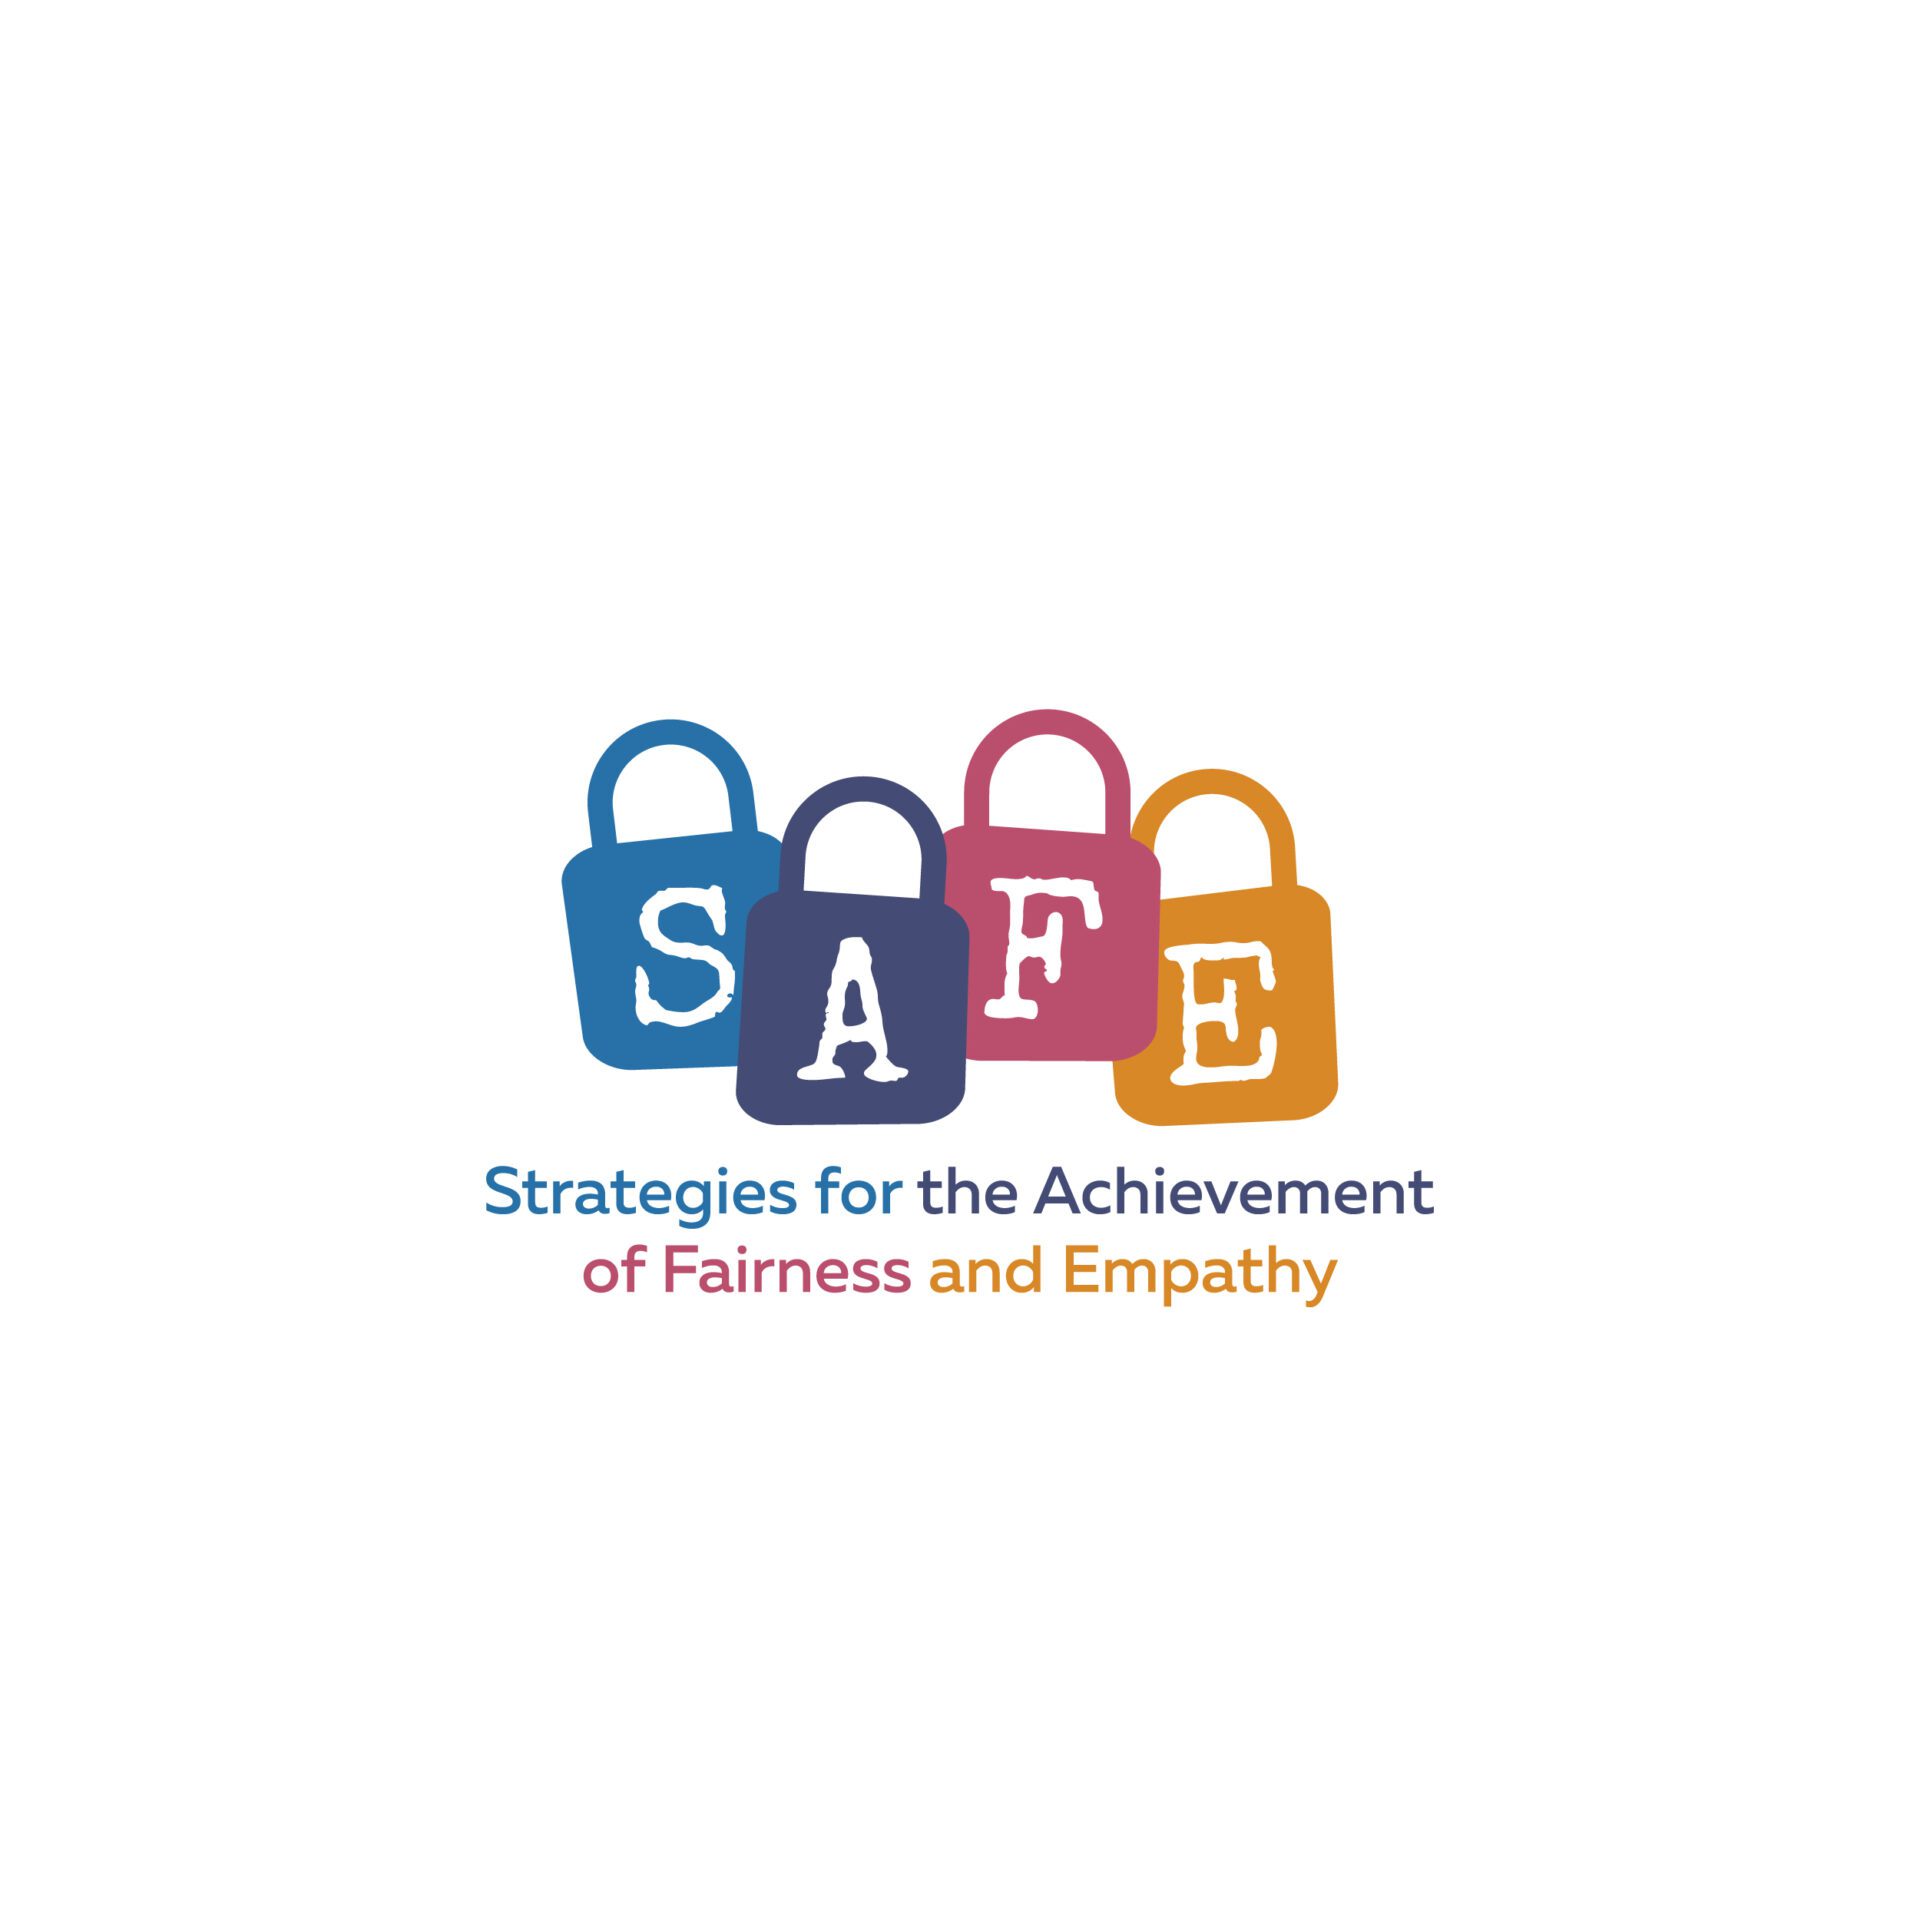 Call for participants - Scambio giovanile  “S.A.F.E"